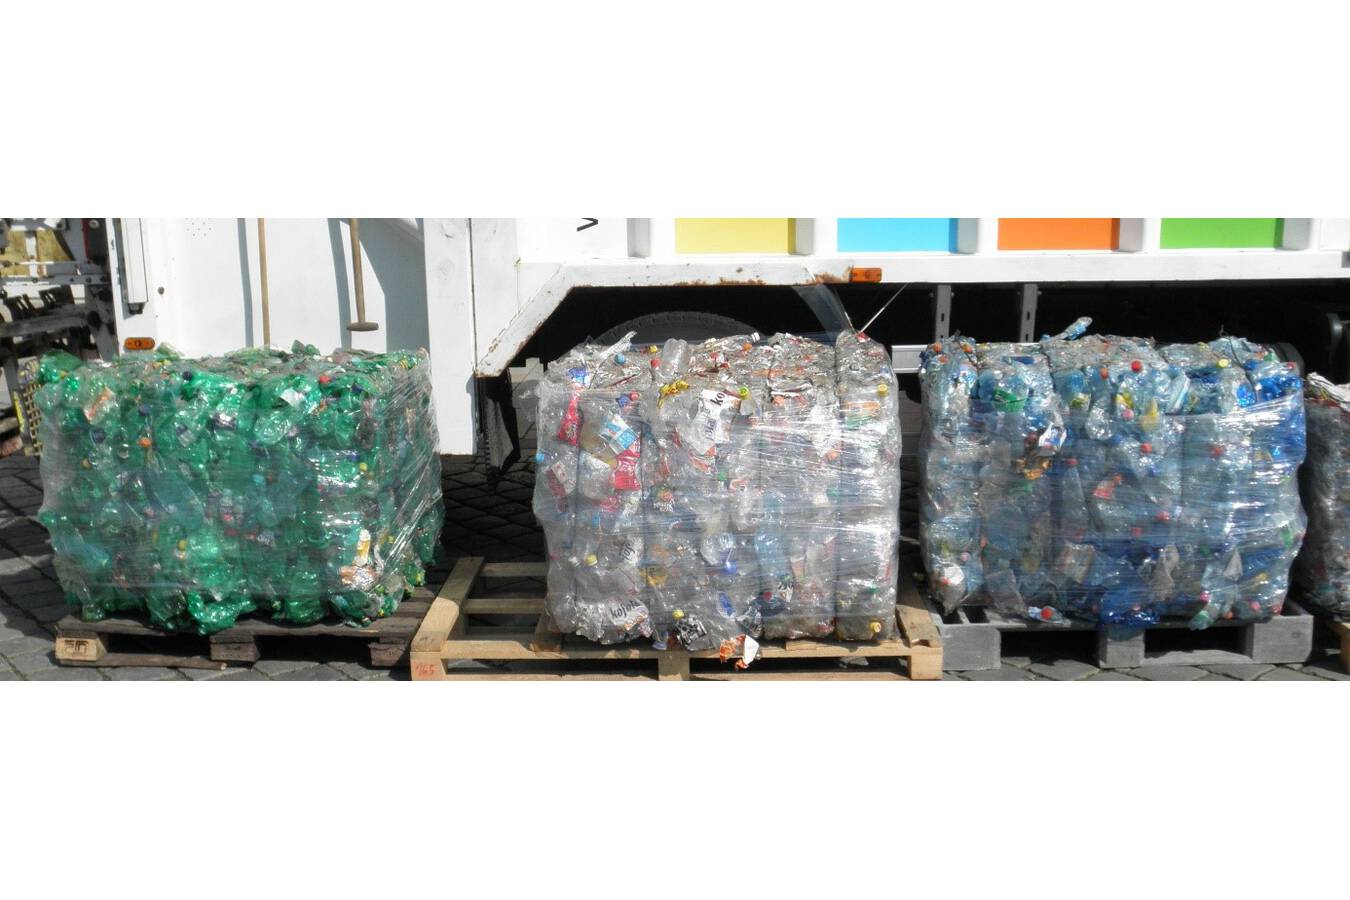 Matthiessen - Technologien für ressourcenschonendes Recycling Durch optimales Auflockern und Auflösen gepresster Wertstoffe gewährleisten Matthiessen Ballenauflöser einen idealen Start in den Recyclingprozess. 